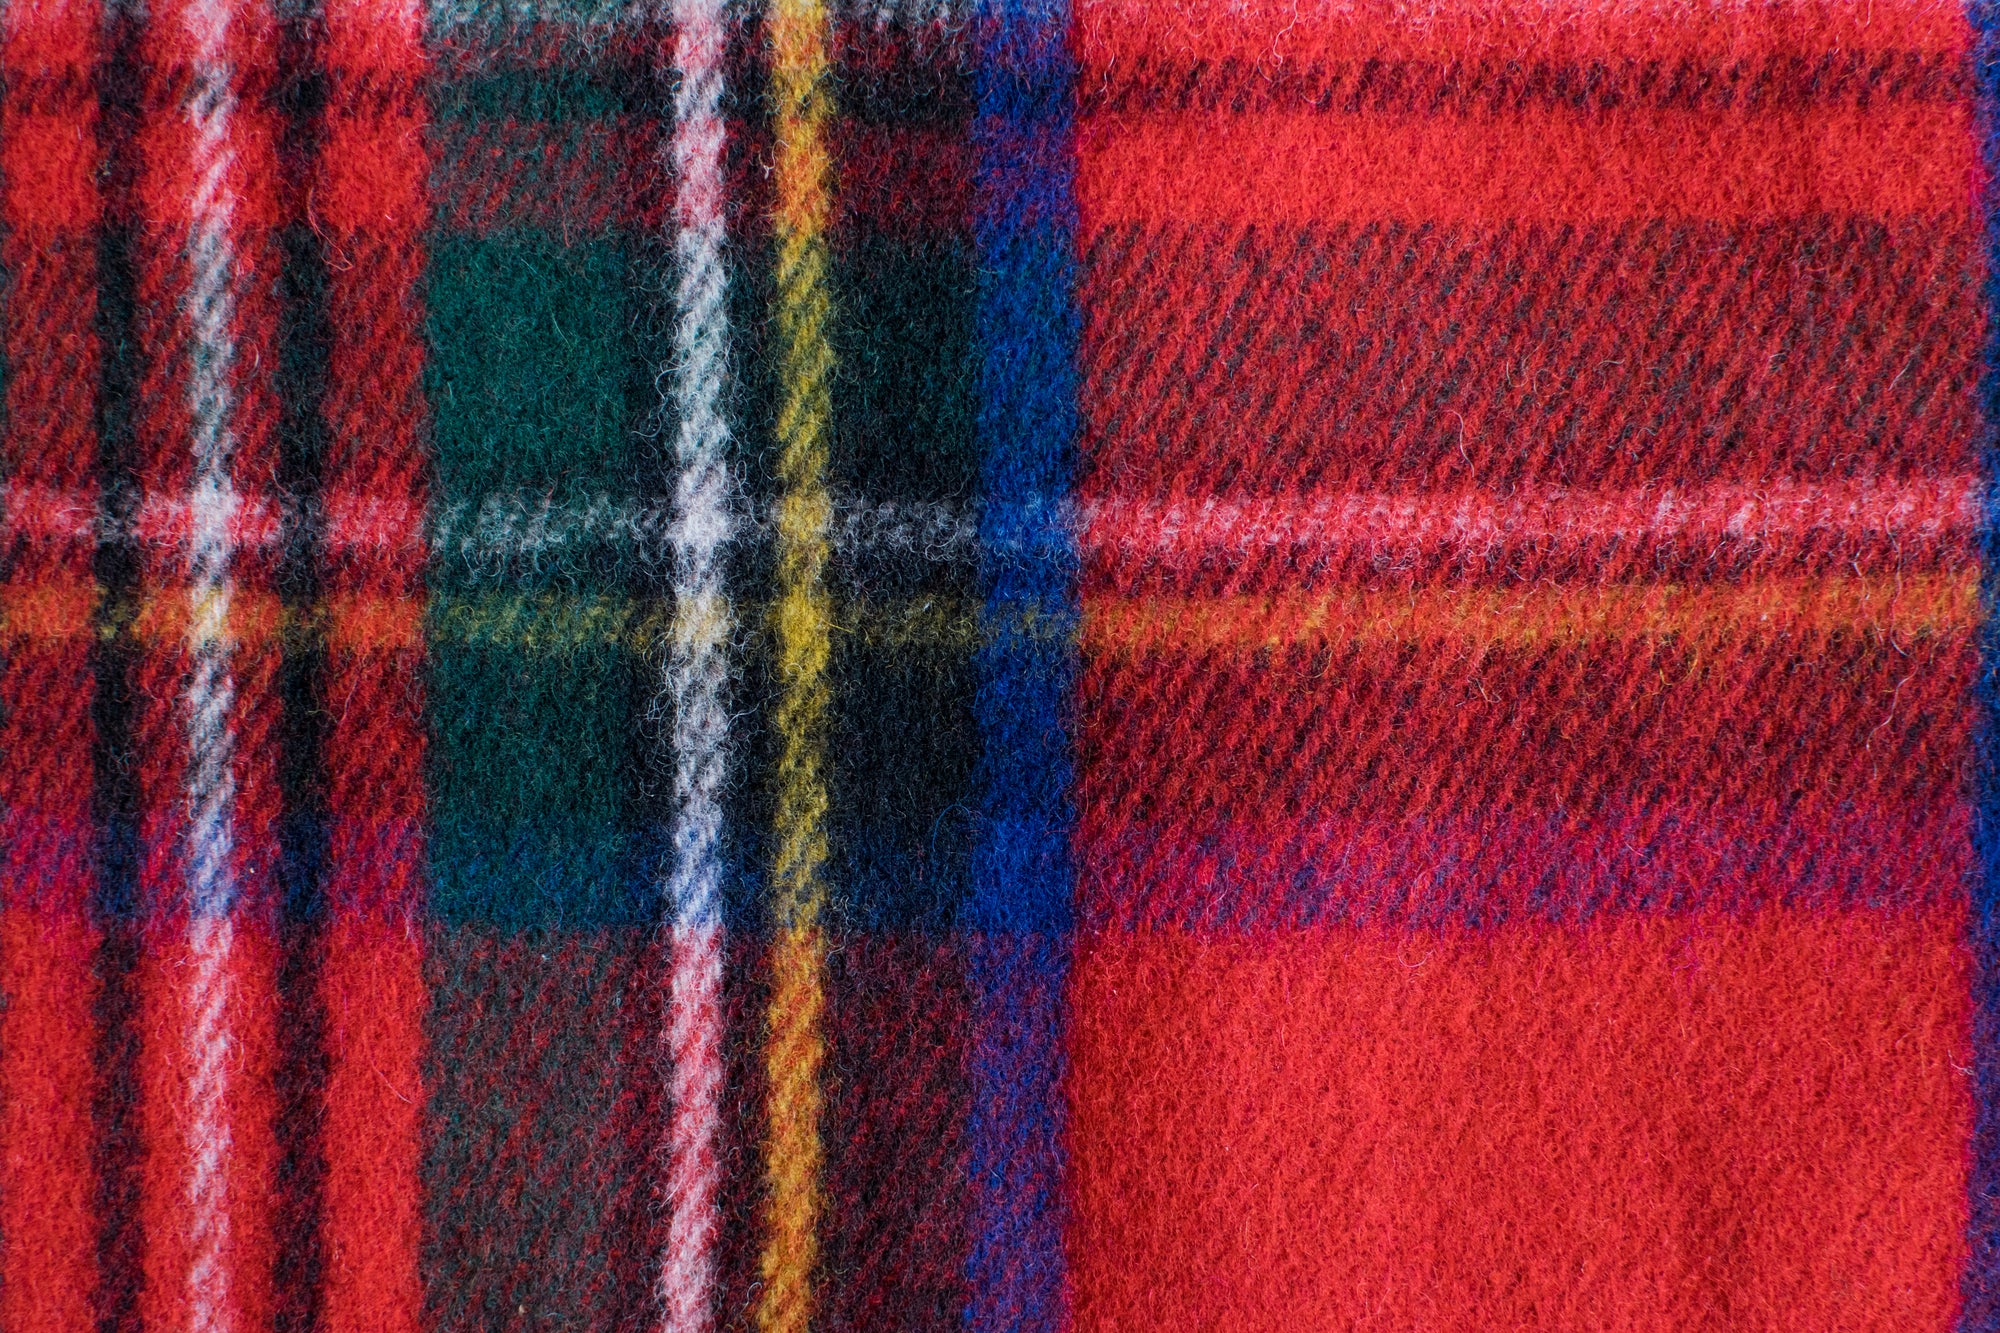 Wool Blend Royal Stewart Tartan - Red